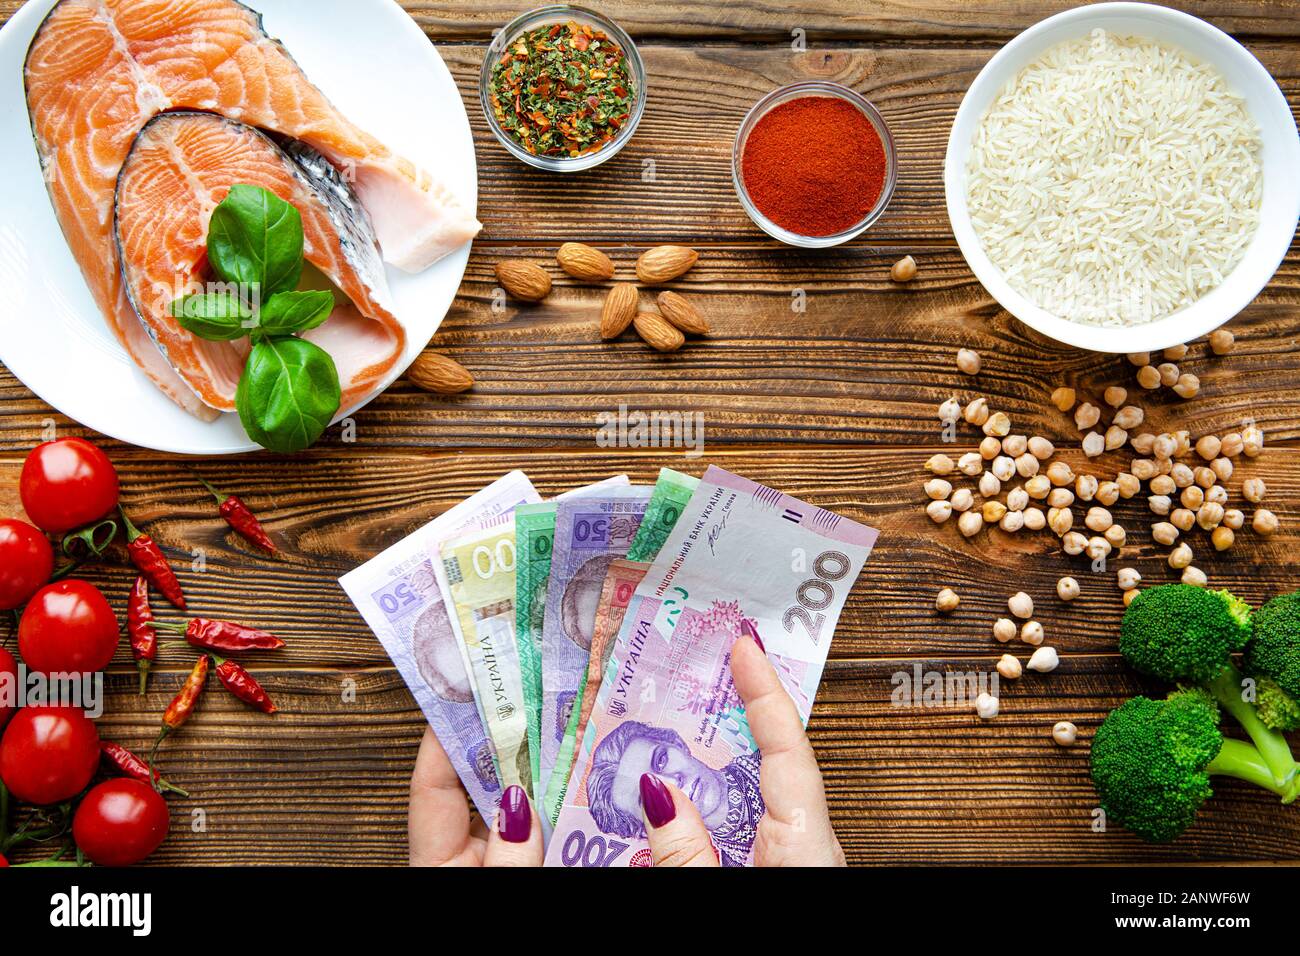 Ukrainische Griwna Wert. Hohe Kosten für gesundes Essen. Harten finanziellen Situation. Weibliche Hand, die eine Währung. Stockfoto